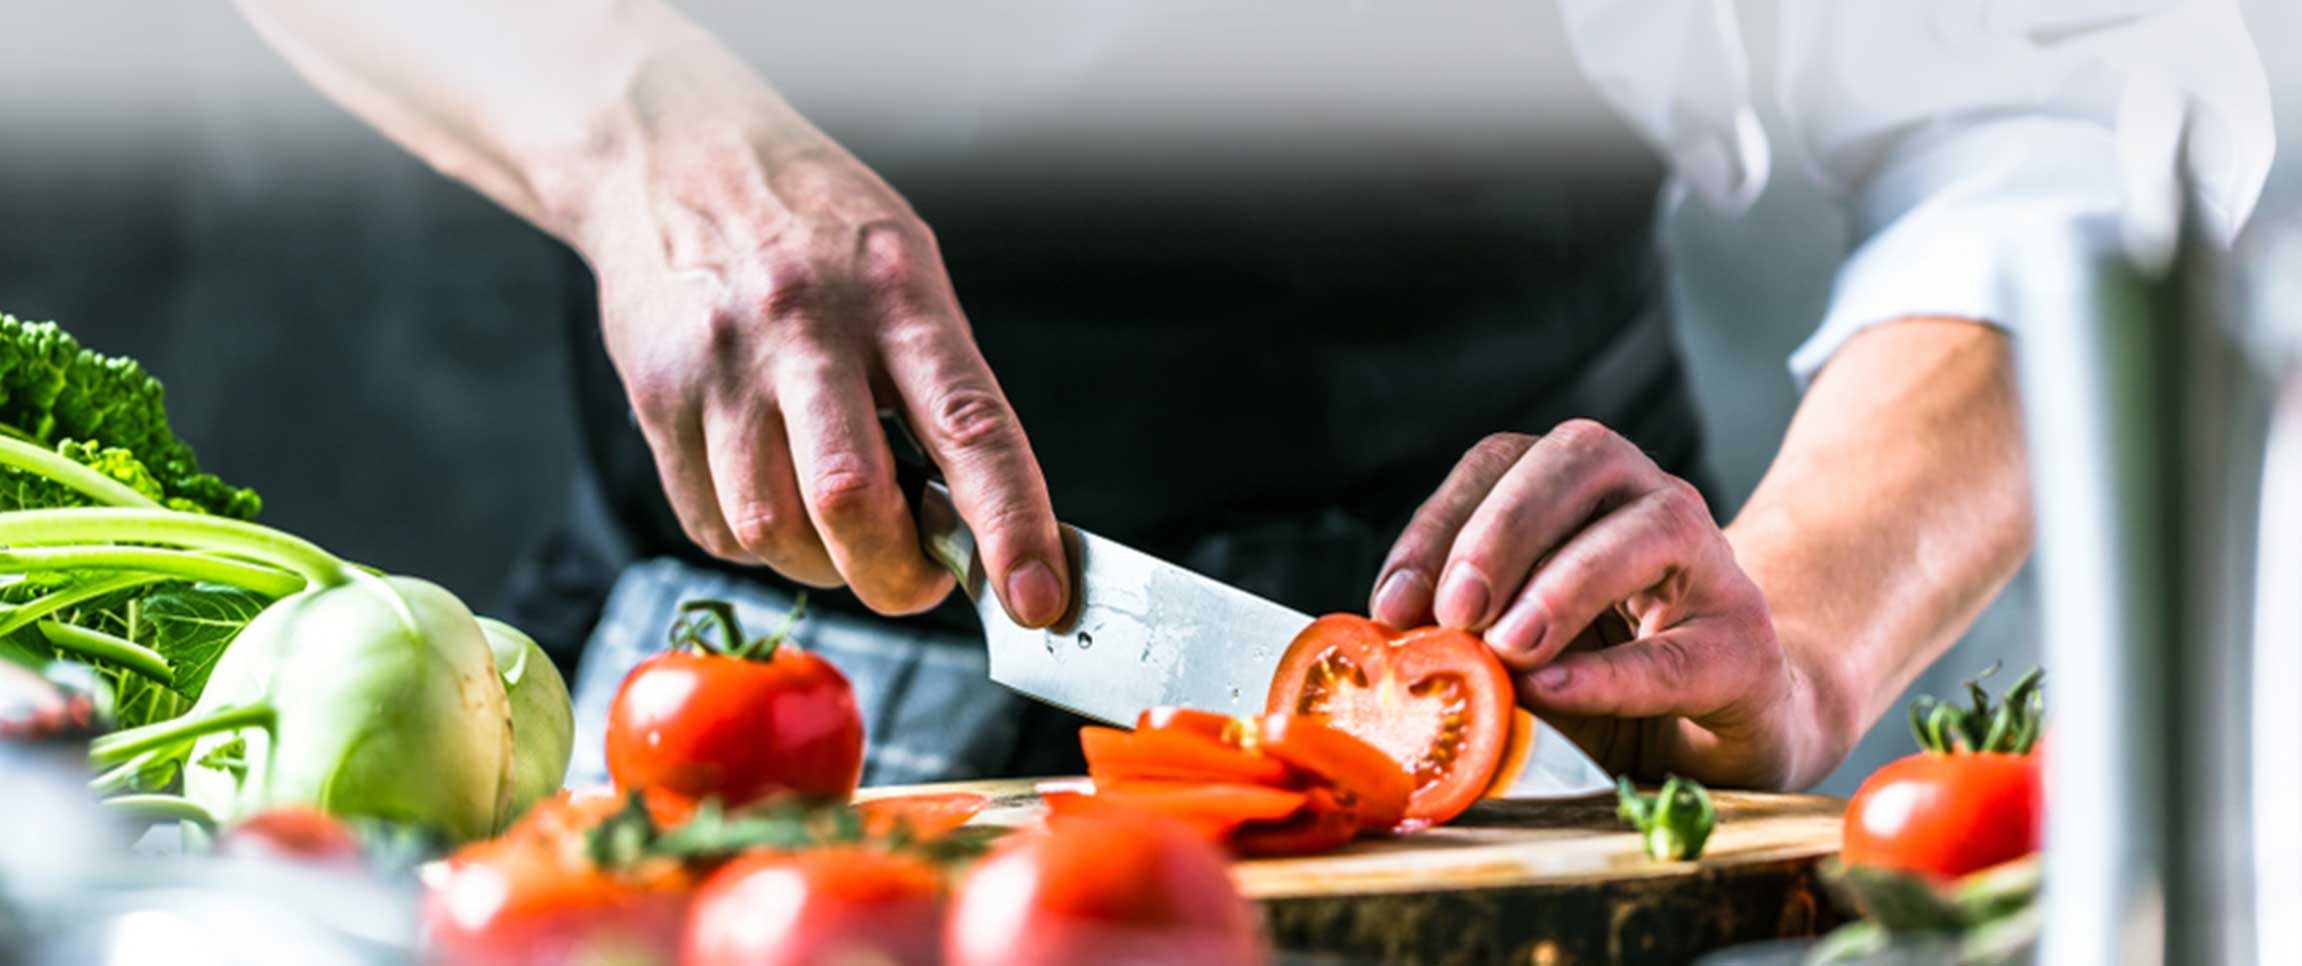 Chef cutting a tomato